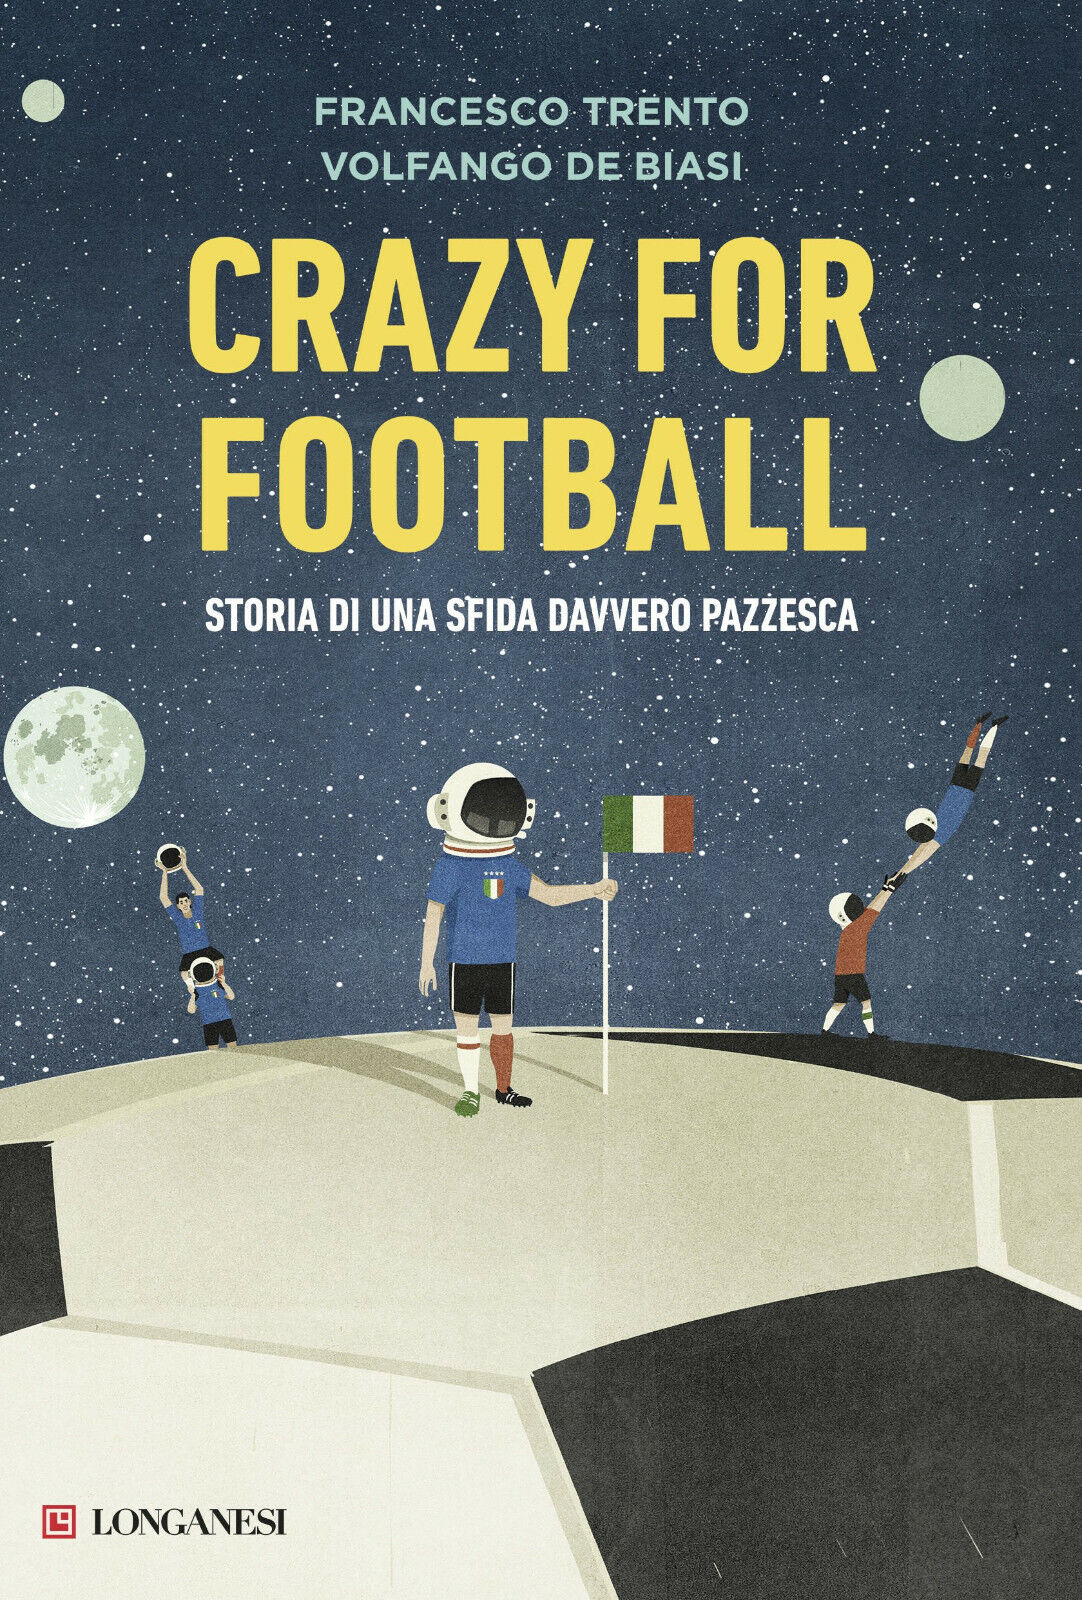 Crazy for football - Francesco Trento, Volfango De Biasi - Longanesi, 2017 libro usato